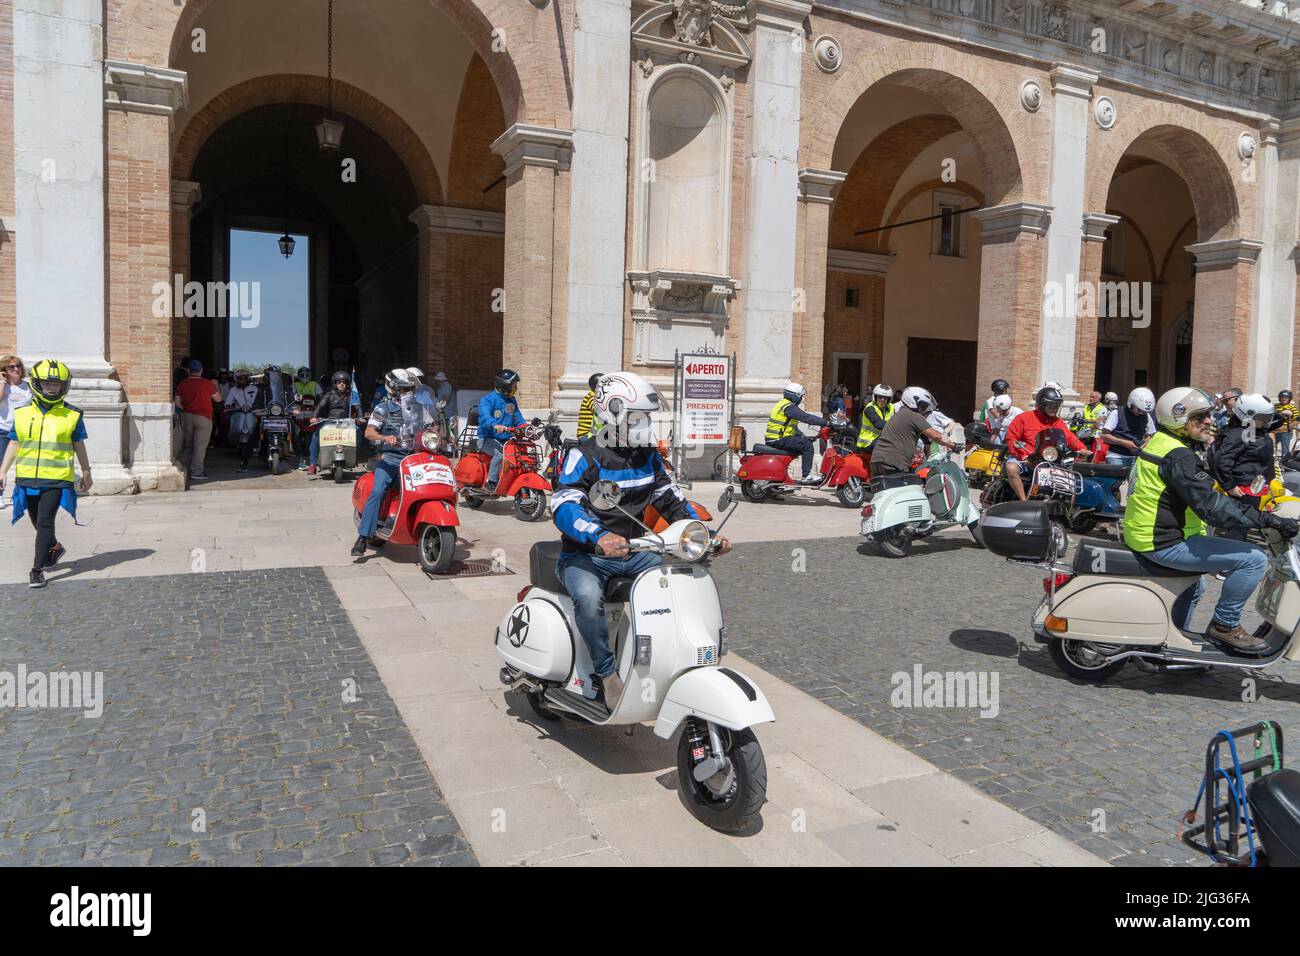 Piazza della Madonna Square, 8th National Vespa Club Macerata Meeting, Loreto, Marche, Italy, Europe Stock Photo